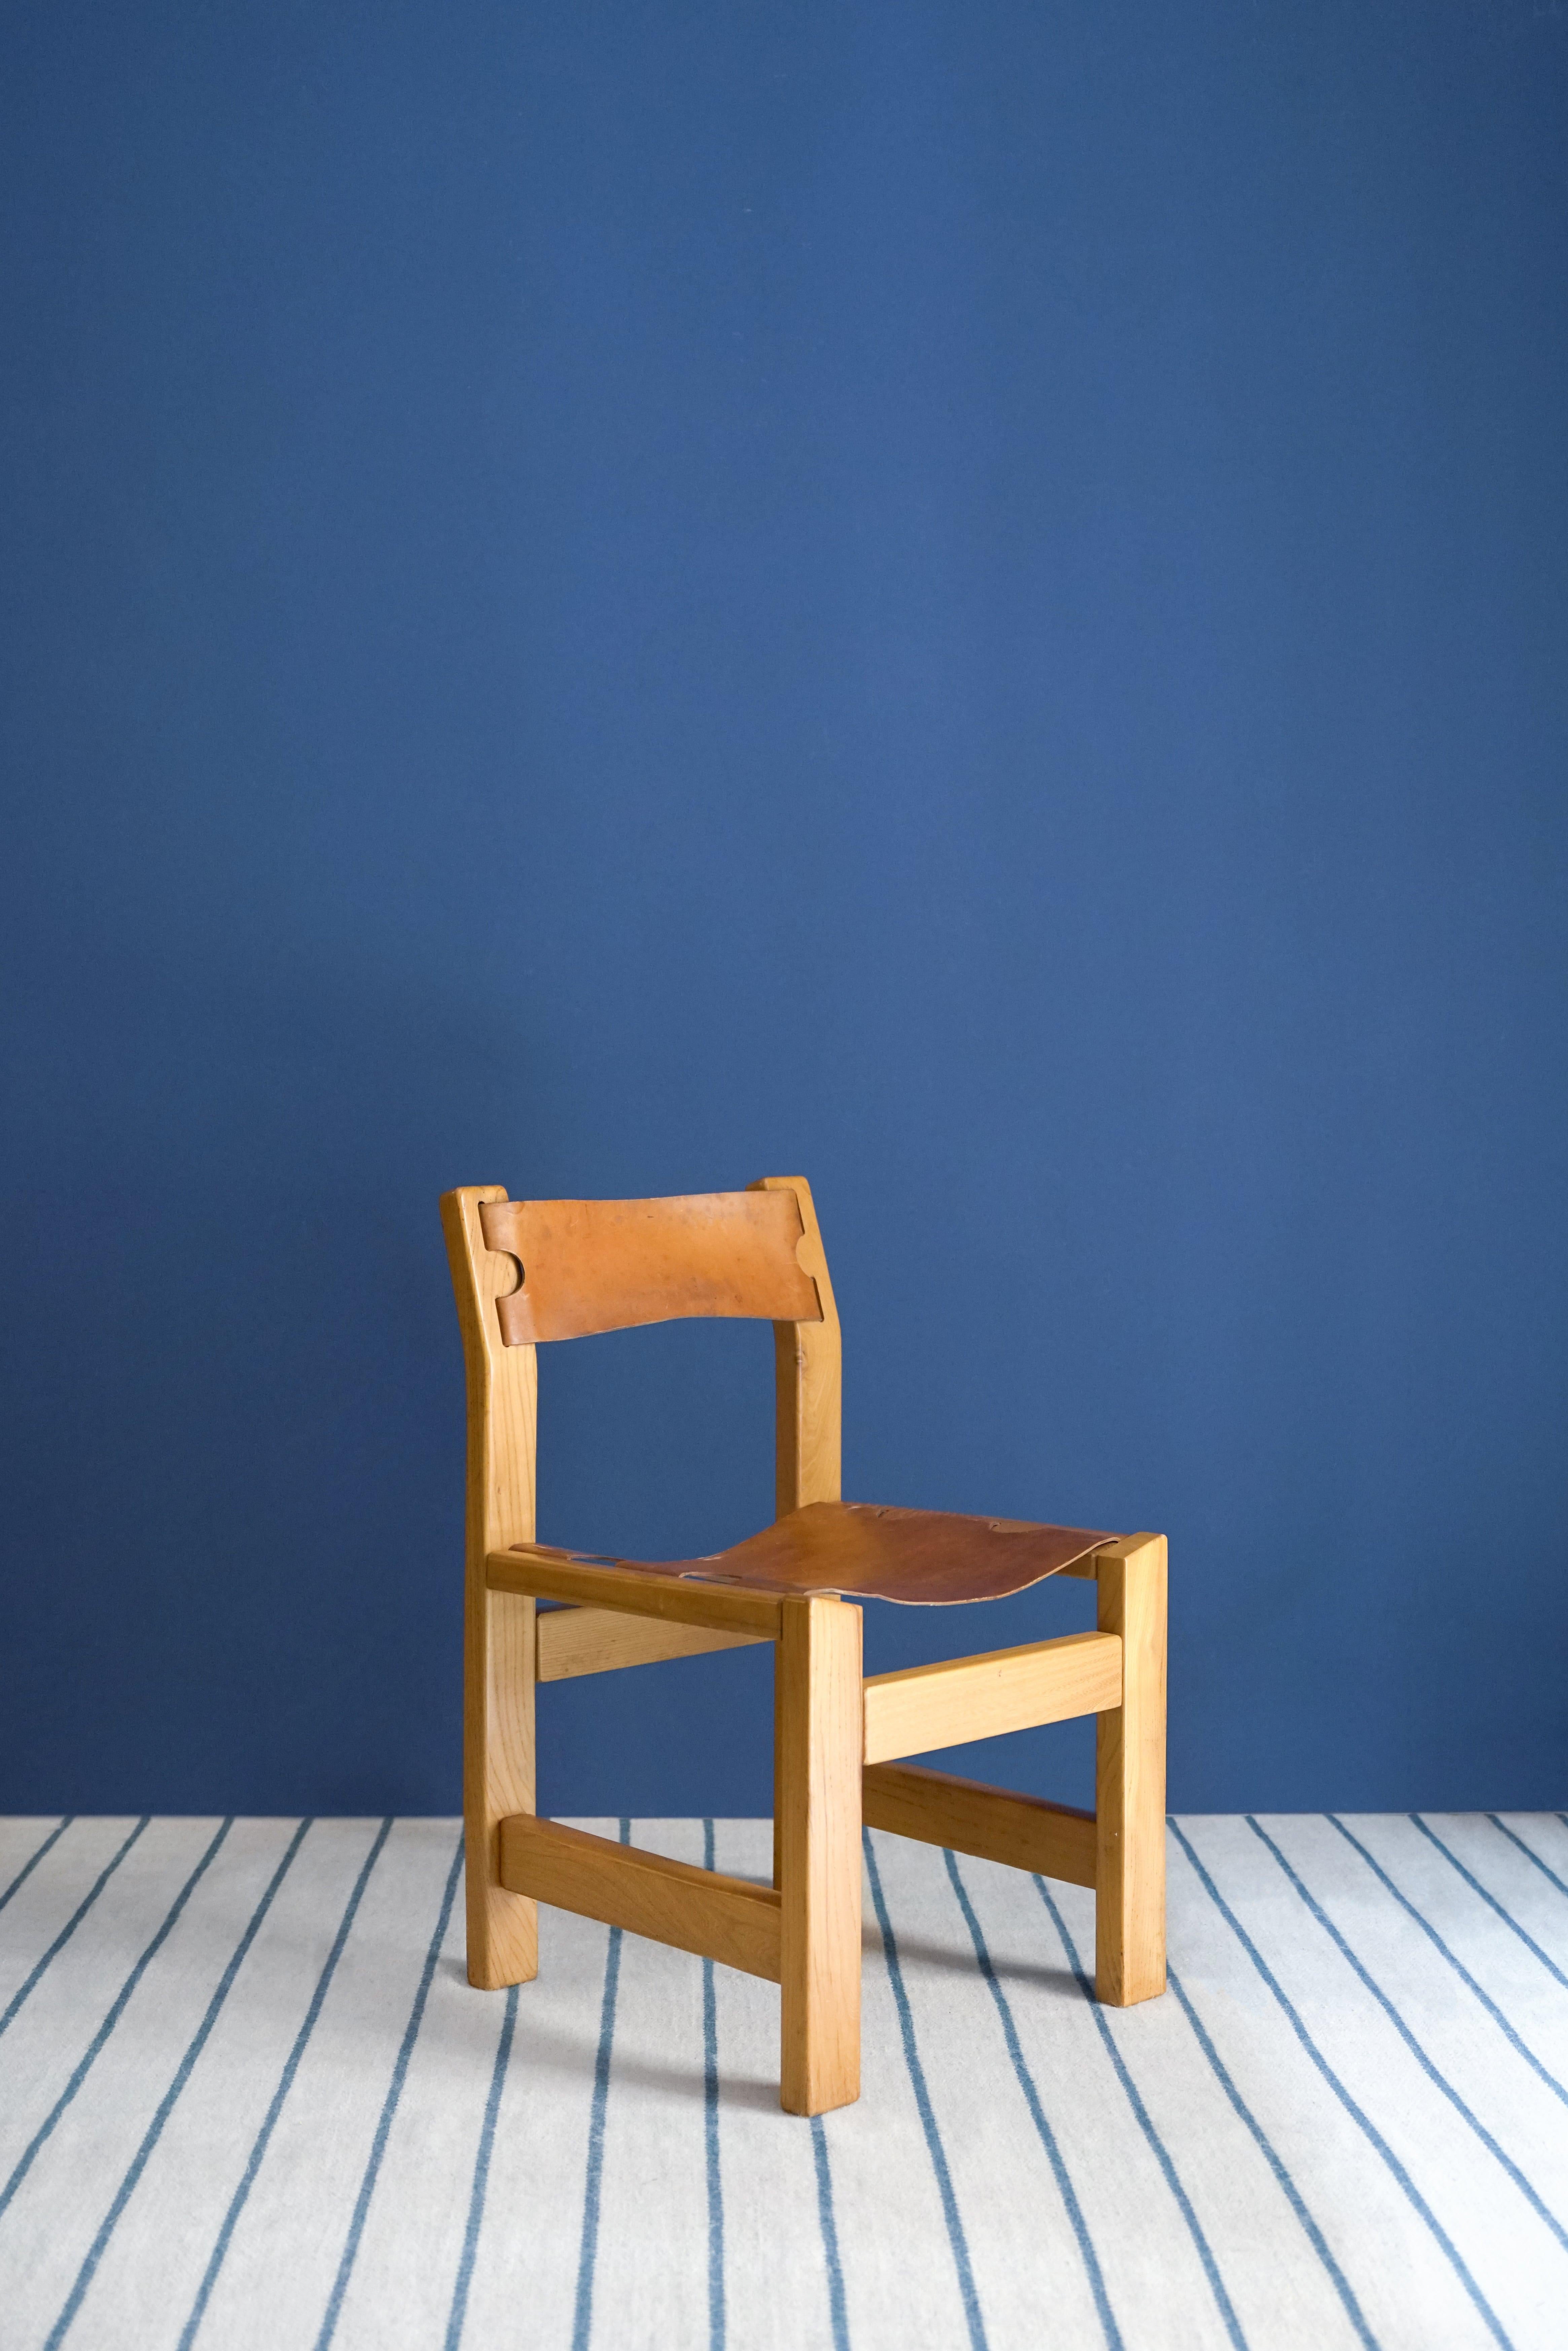 Brutalistische Stühle aus Ulme und Leder von Maison Regain. Die Stühle sind robust und verbinden Design mit den eigenen Details von Maison Regain. 
Dieses Set besteht aus insgesamt 6 Stühlen, die in ihrem ursprünglichen Zustand erhalten sind.

